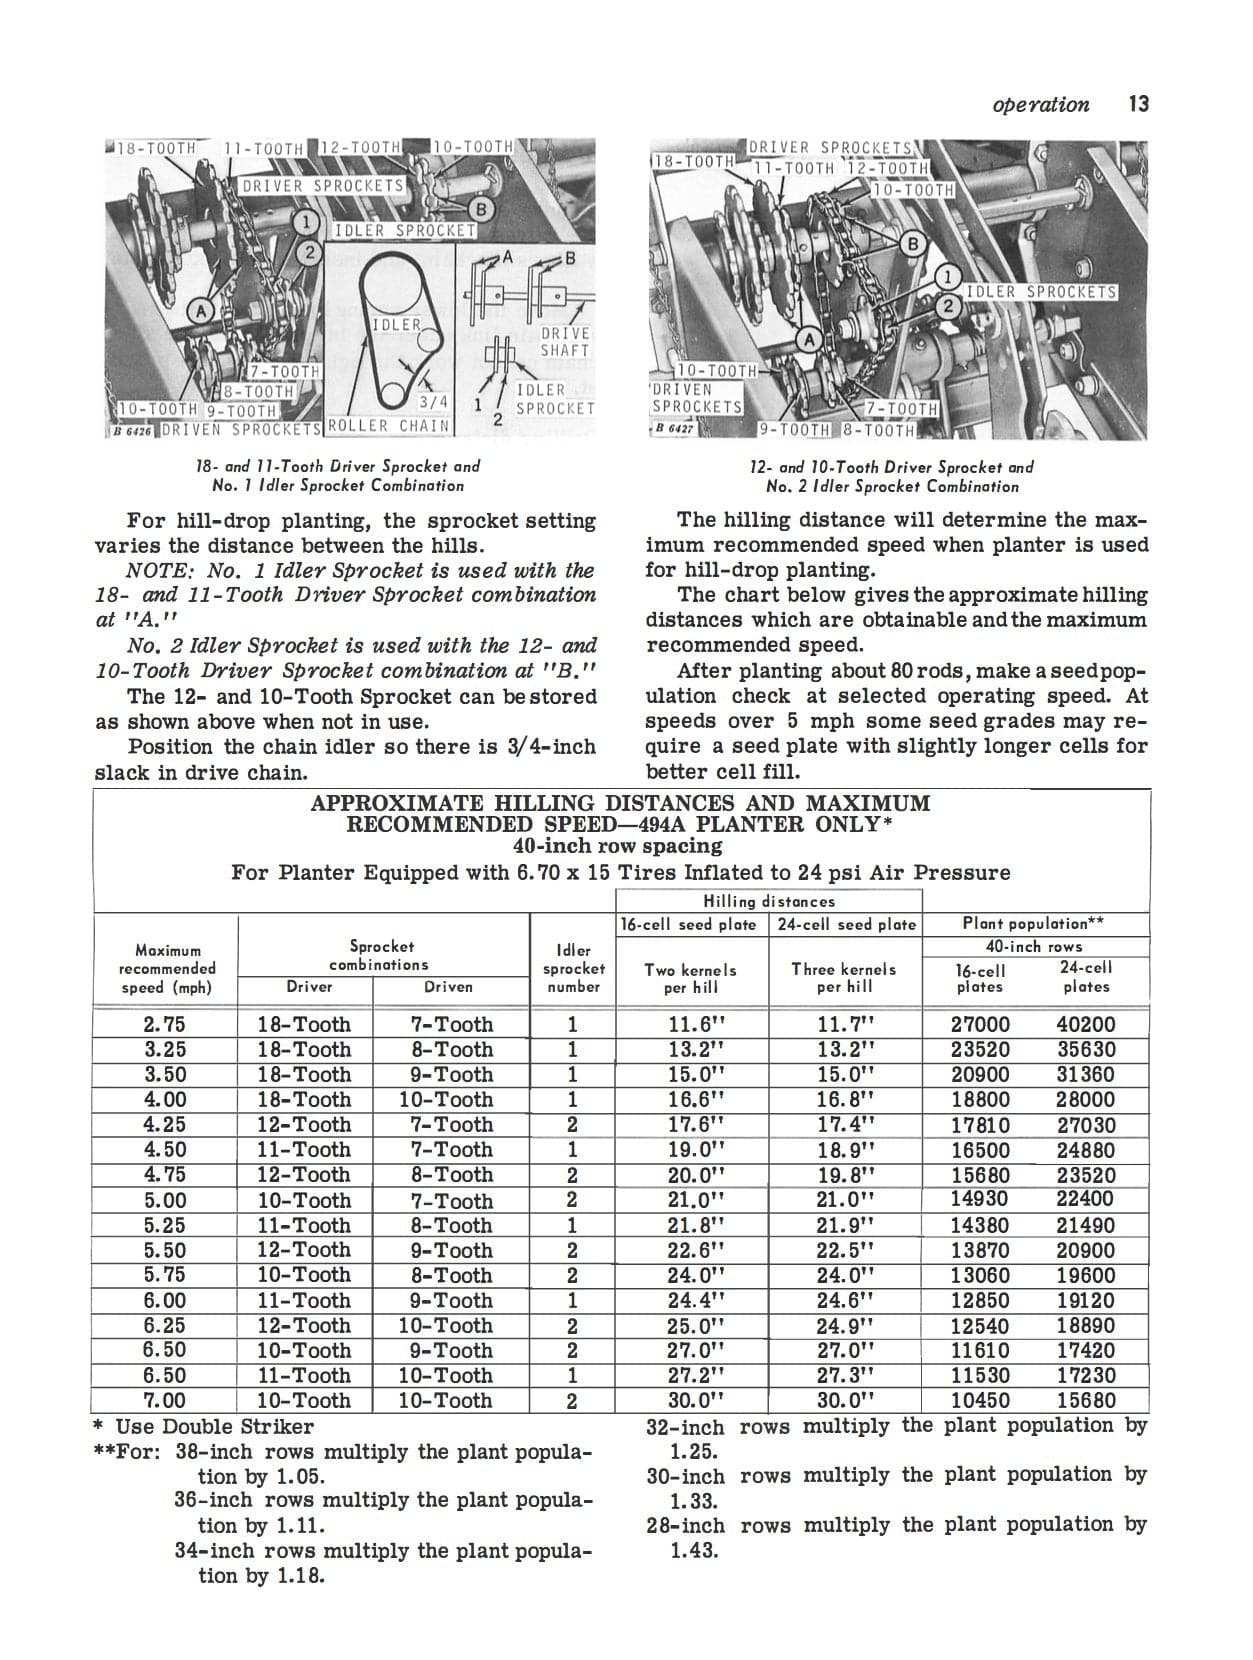 John Deere 494A and 495A Corn Planters - Operator's Manual - Ag Manuals - A Provider of Digital Farm Manuals - 2